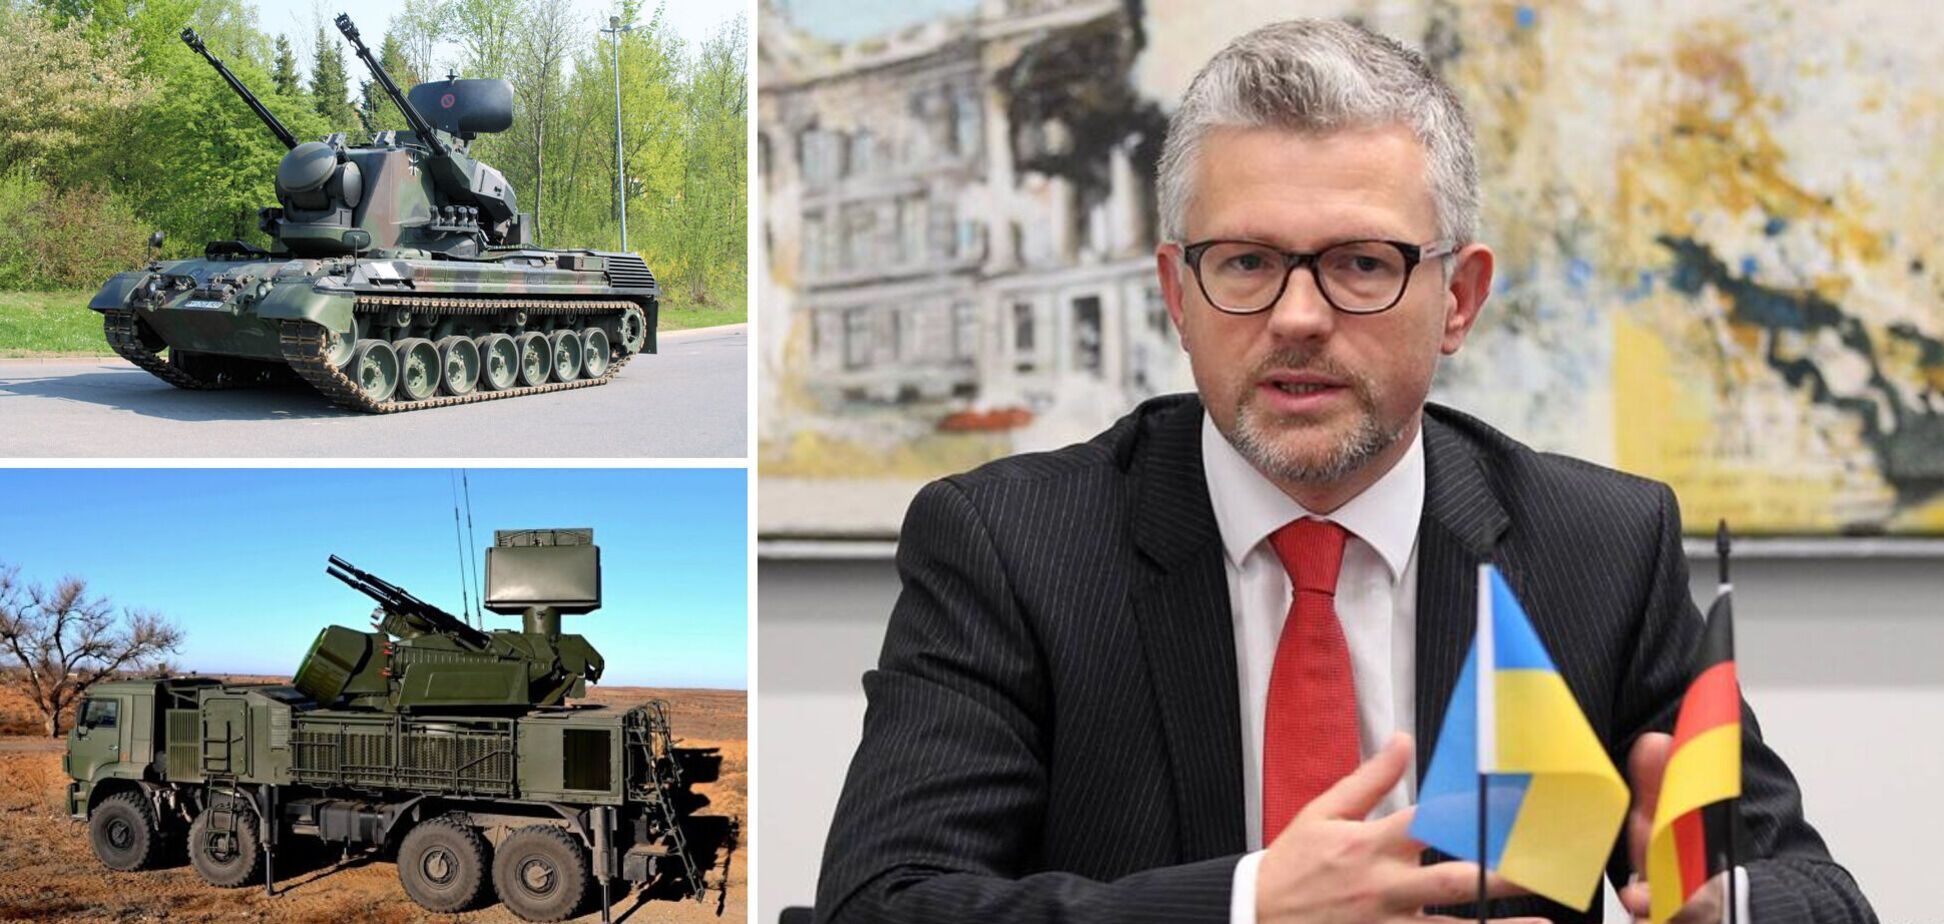 Посол Мельник рассказал, сколько немецкого оружия поступит в Украину и когда начнутся поставки. Видео